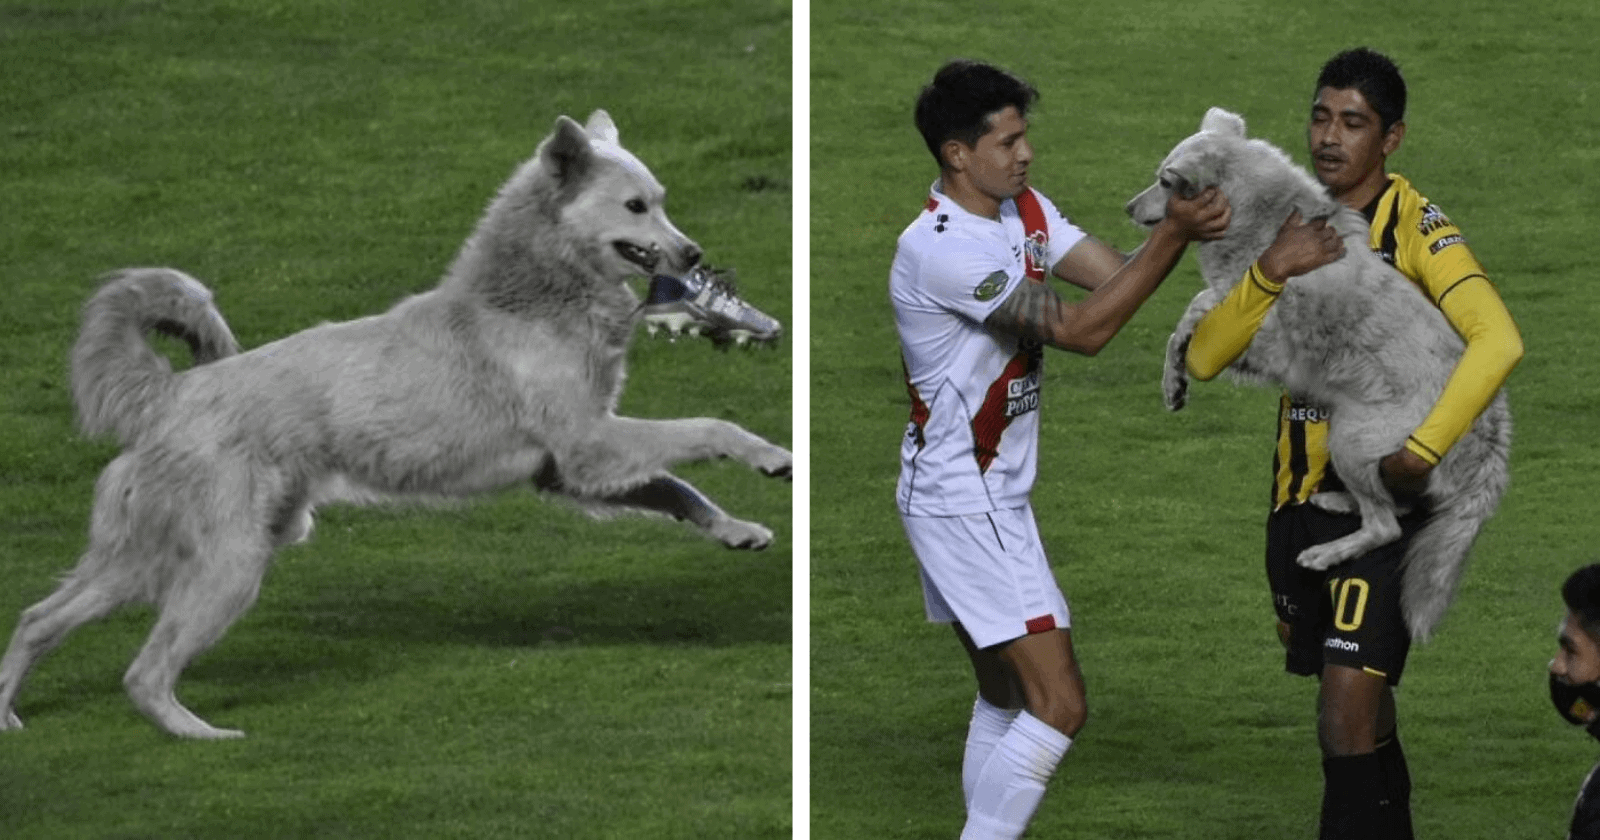 Cãozinho que invadiu campo e parou jogo de futebol recebe a melhor surpresa de sua vida!